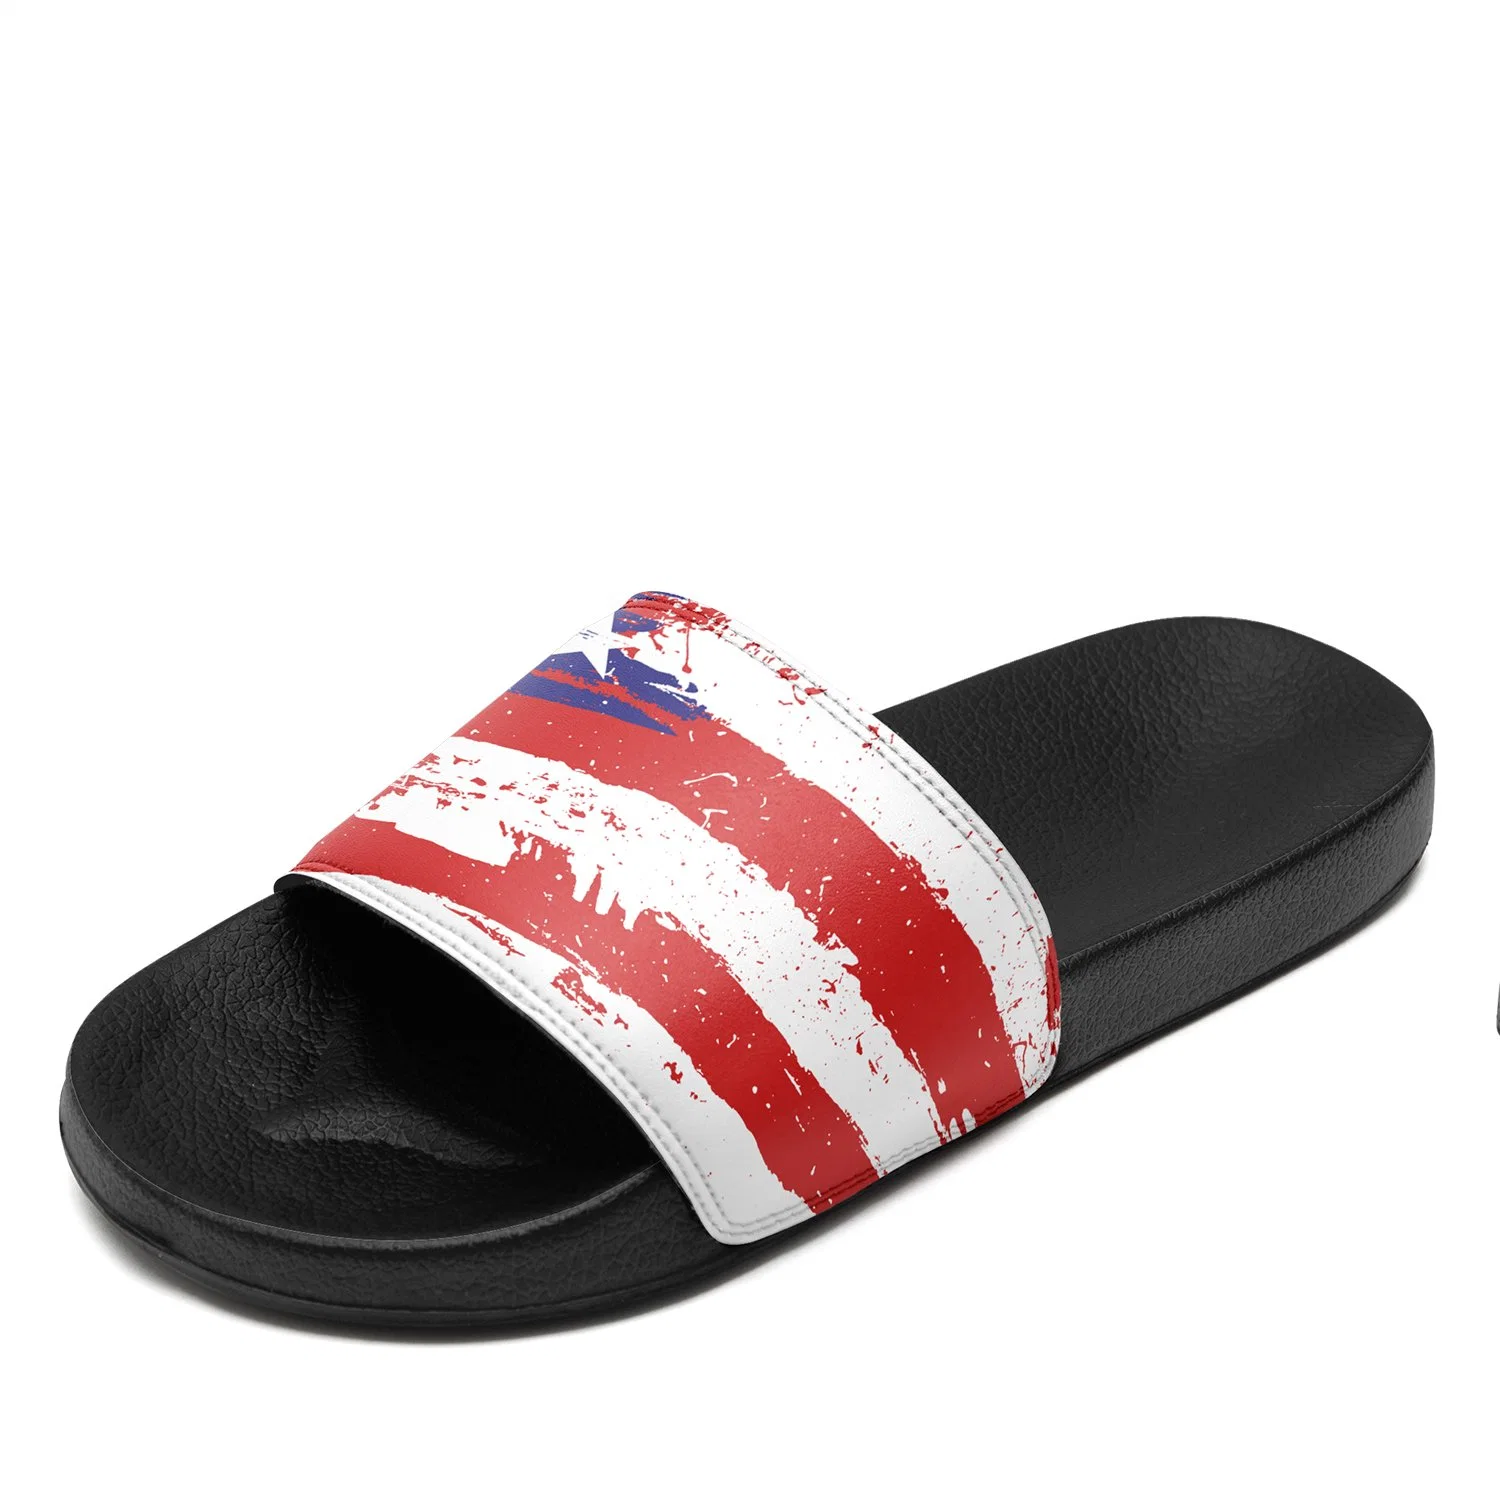 Custom Unisex Slide Sandals Slip on Athletic Sport Slides Wholesale Dropshipping Slippers